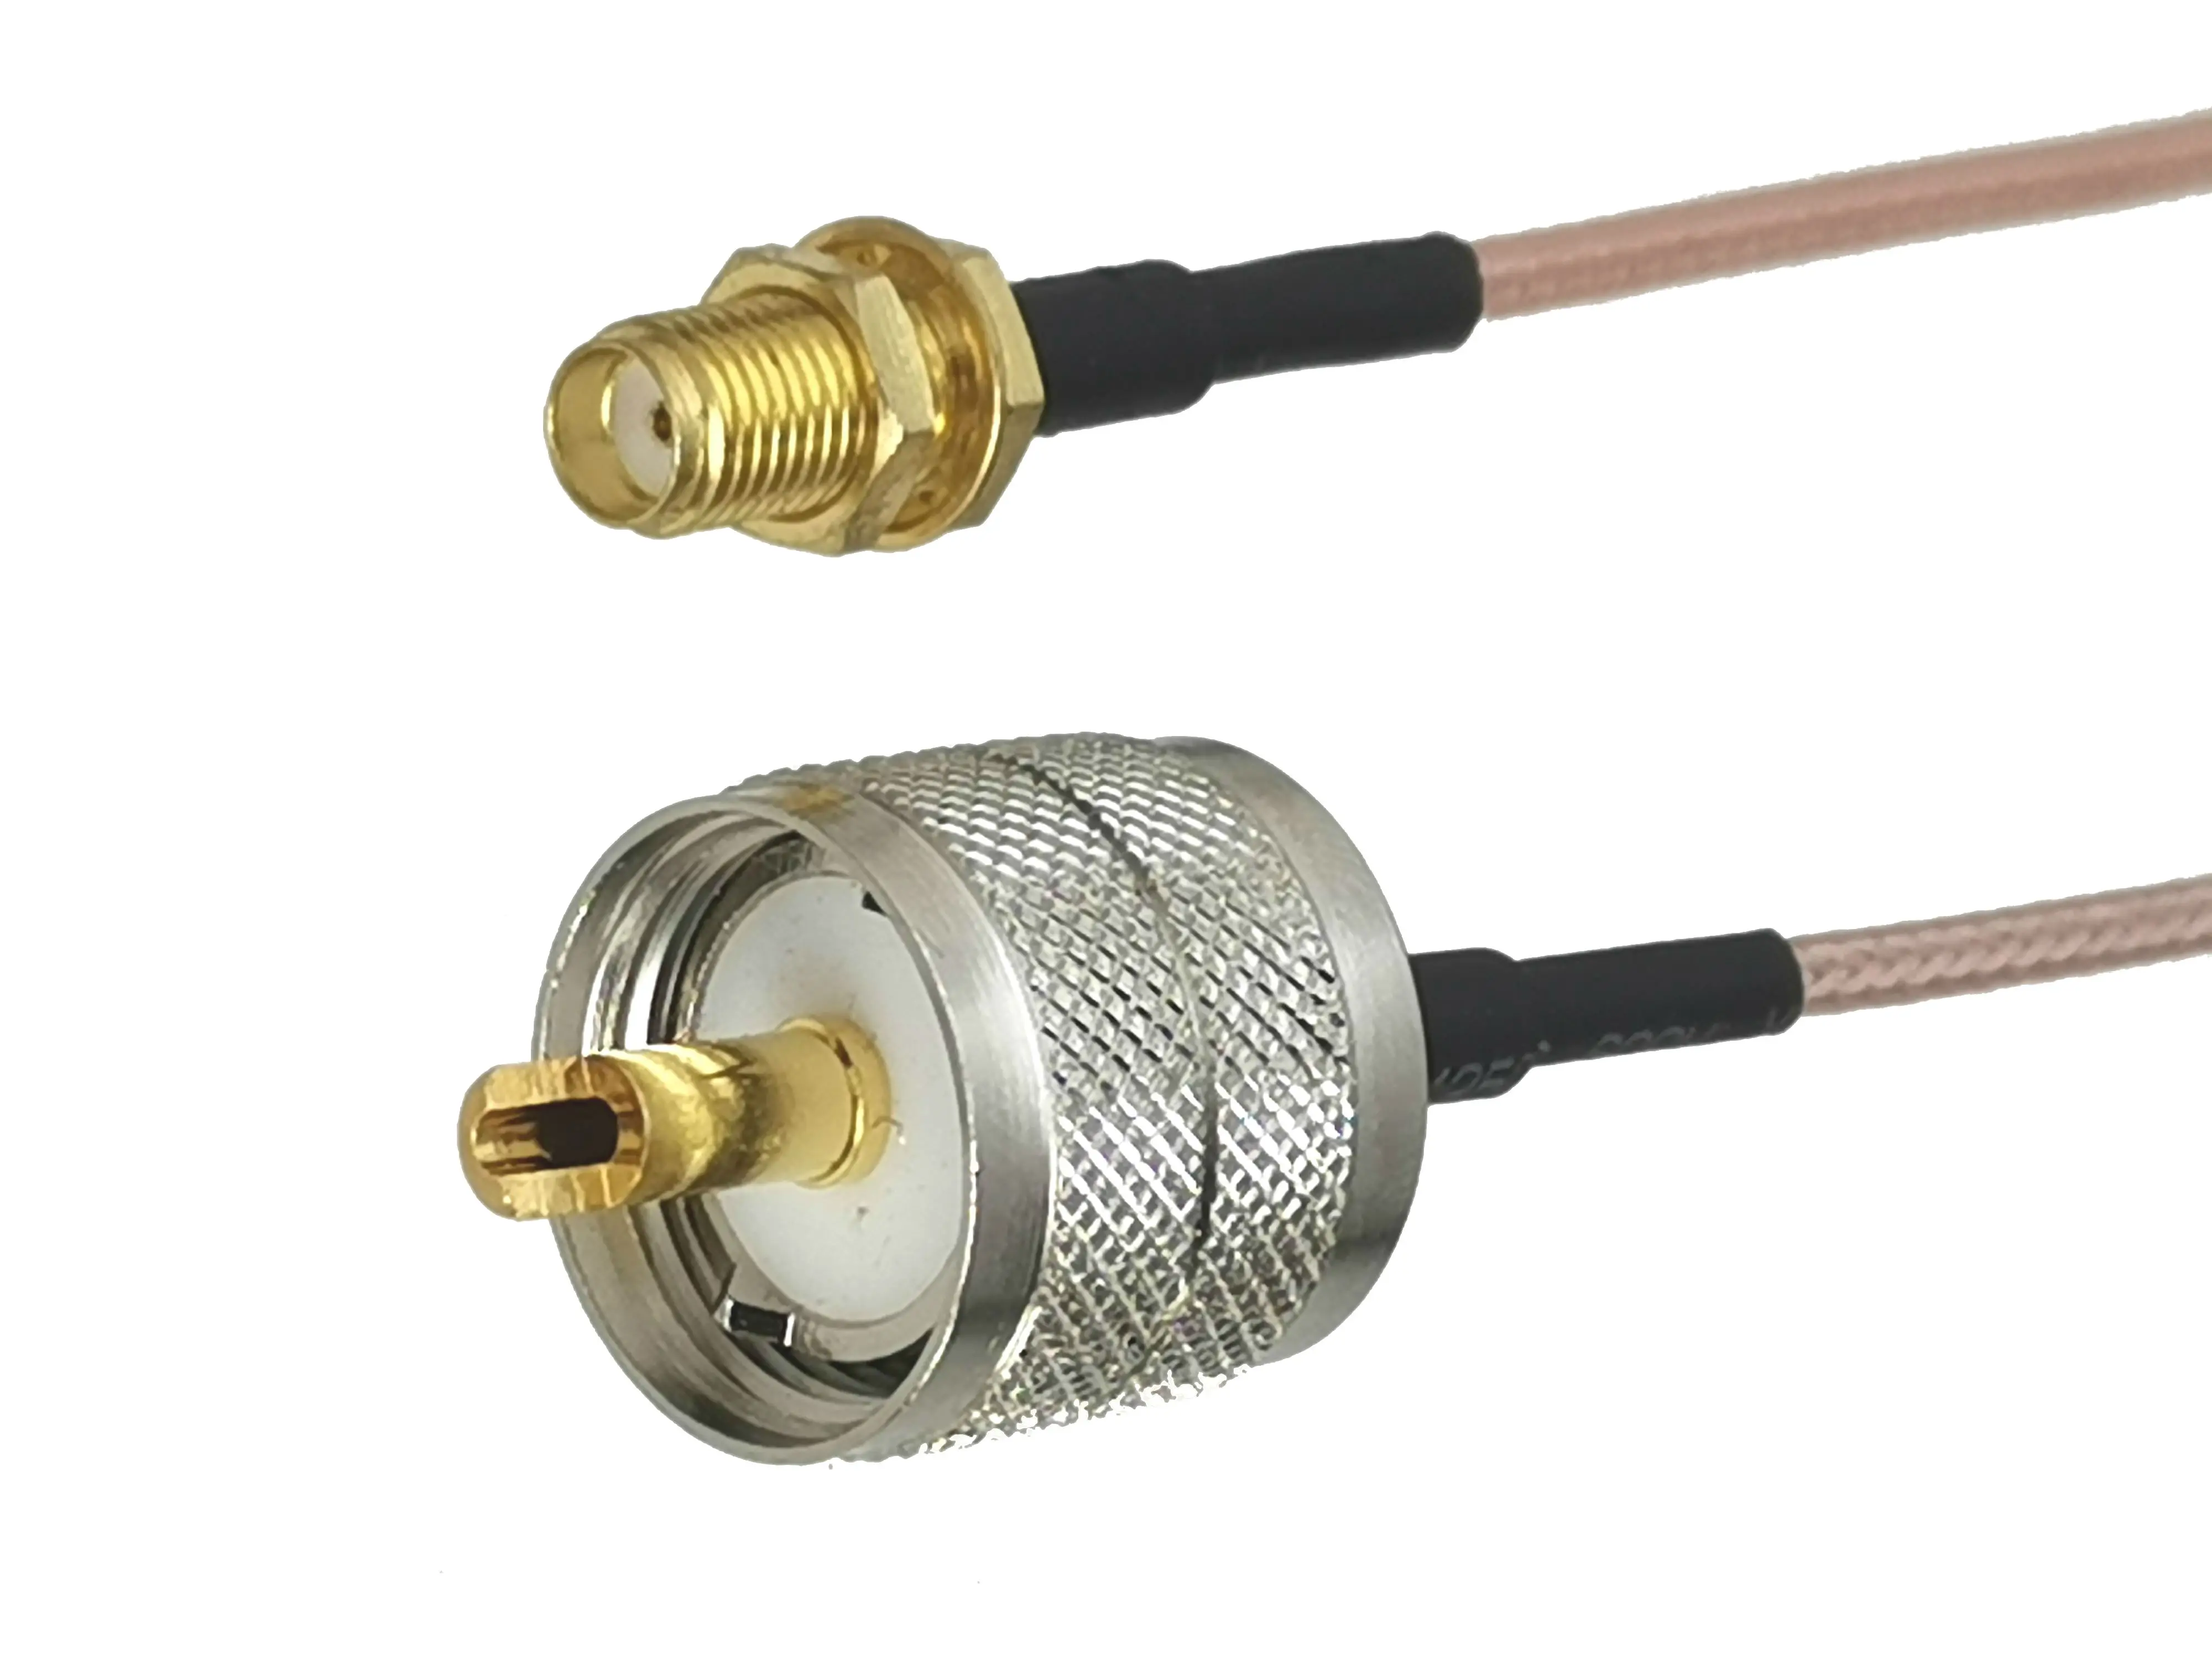 

1 шт. RG316 SMA женский разъем переборка к UHF PL259 штекер Разъем RF коаксиальный гибкий соединительный кабель для радио антенны 4 дюйма ~ 10 м